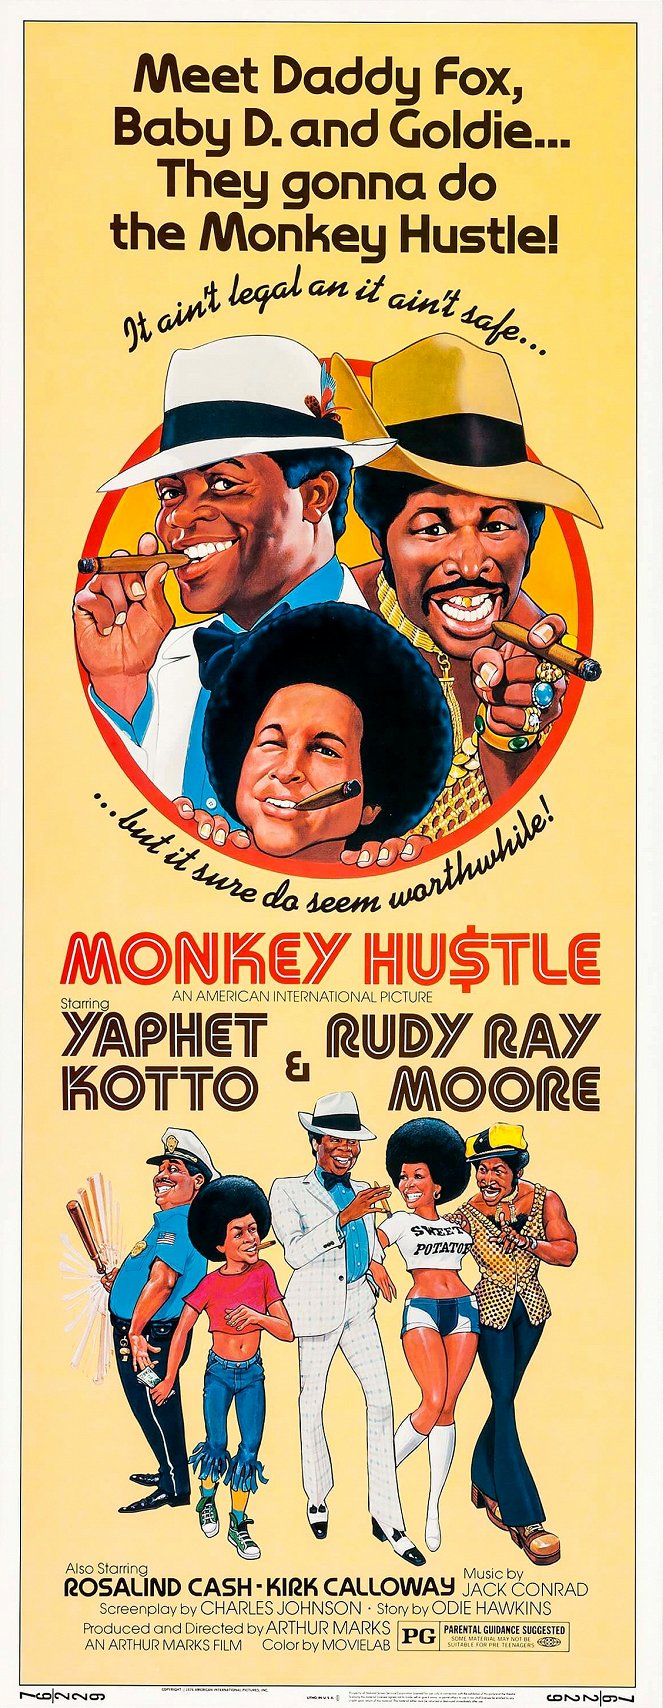 The Monkey Hu$tle - Plakate